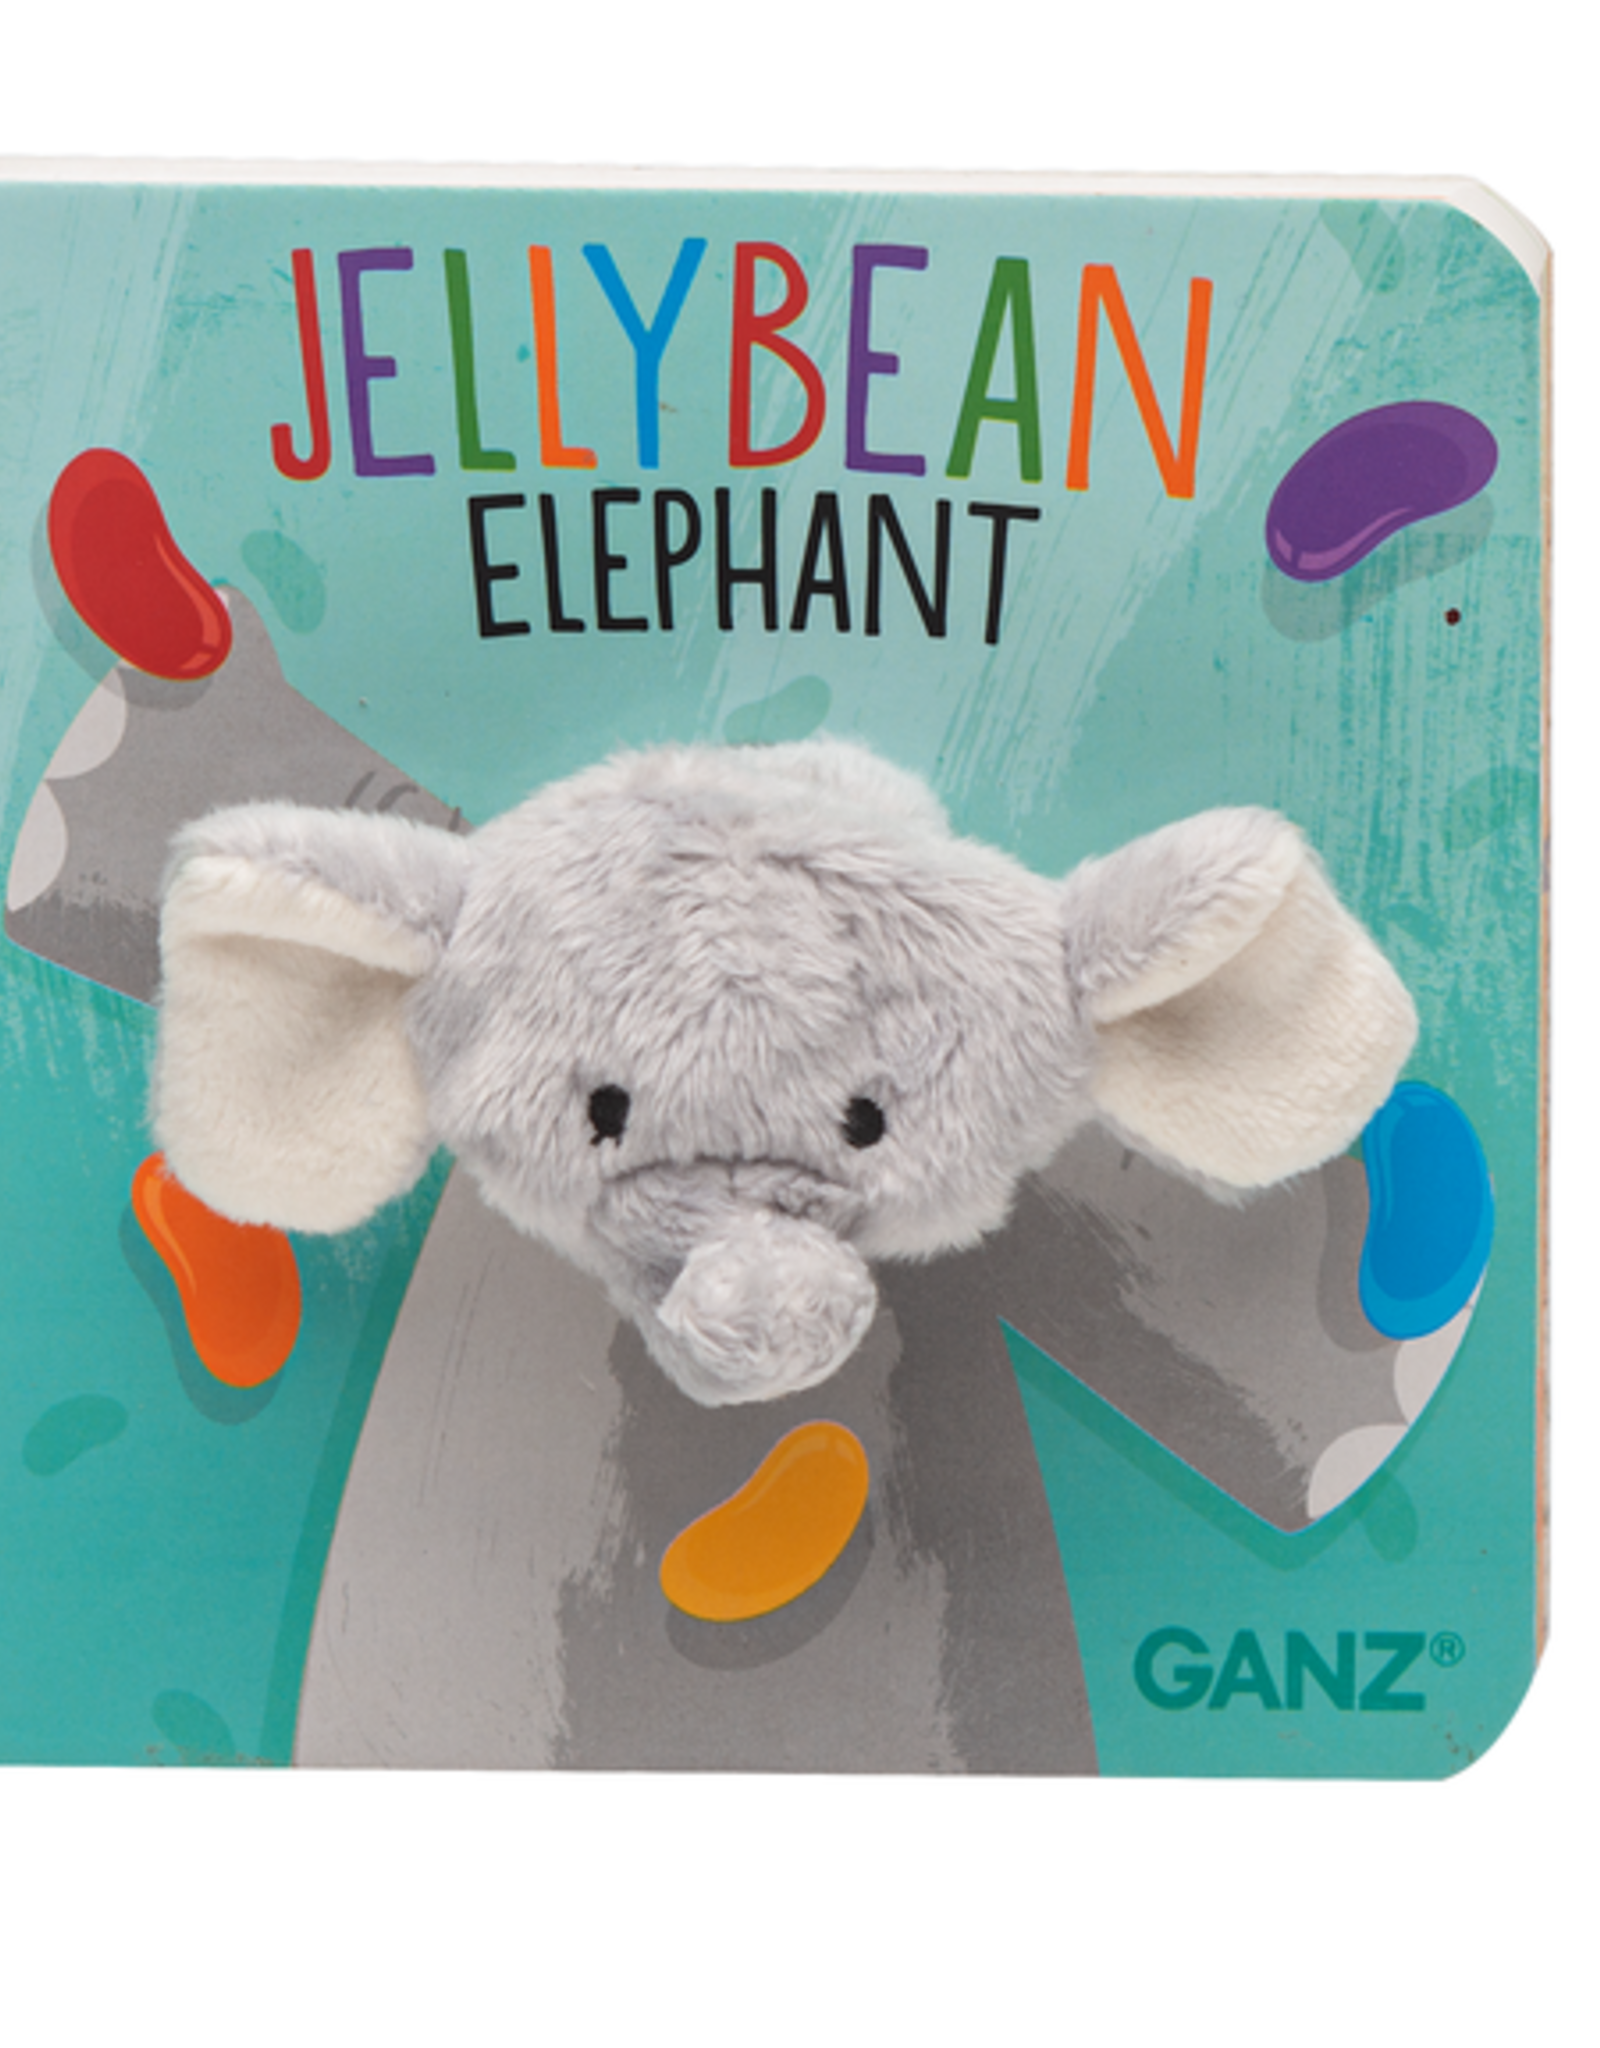 GANZ Jellybean Elephant Finger Puppet Book